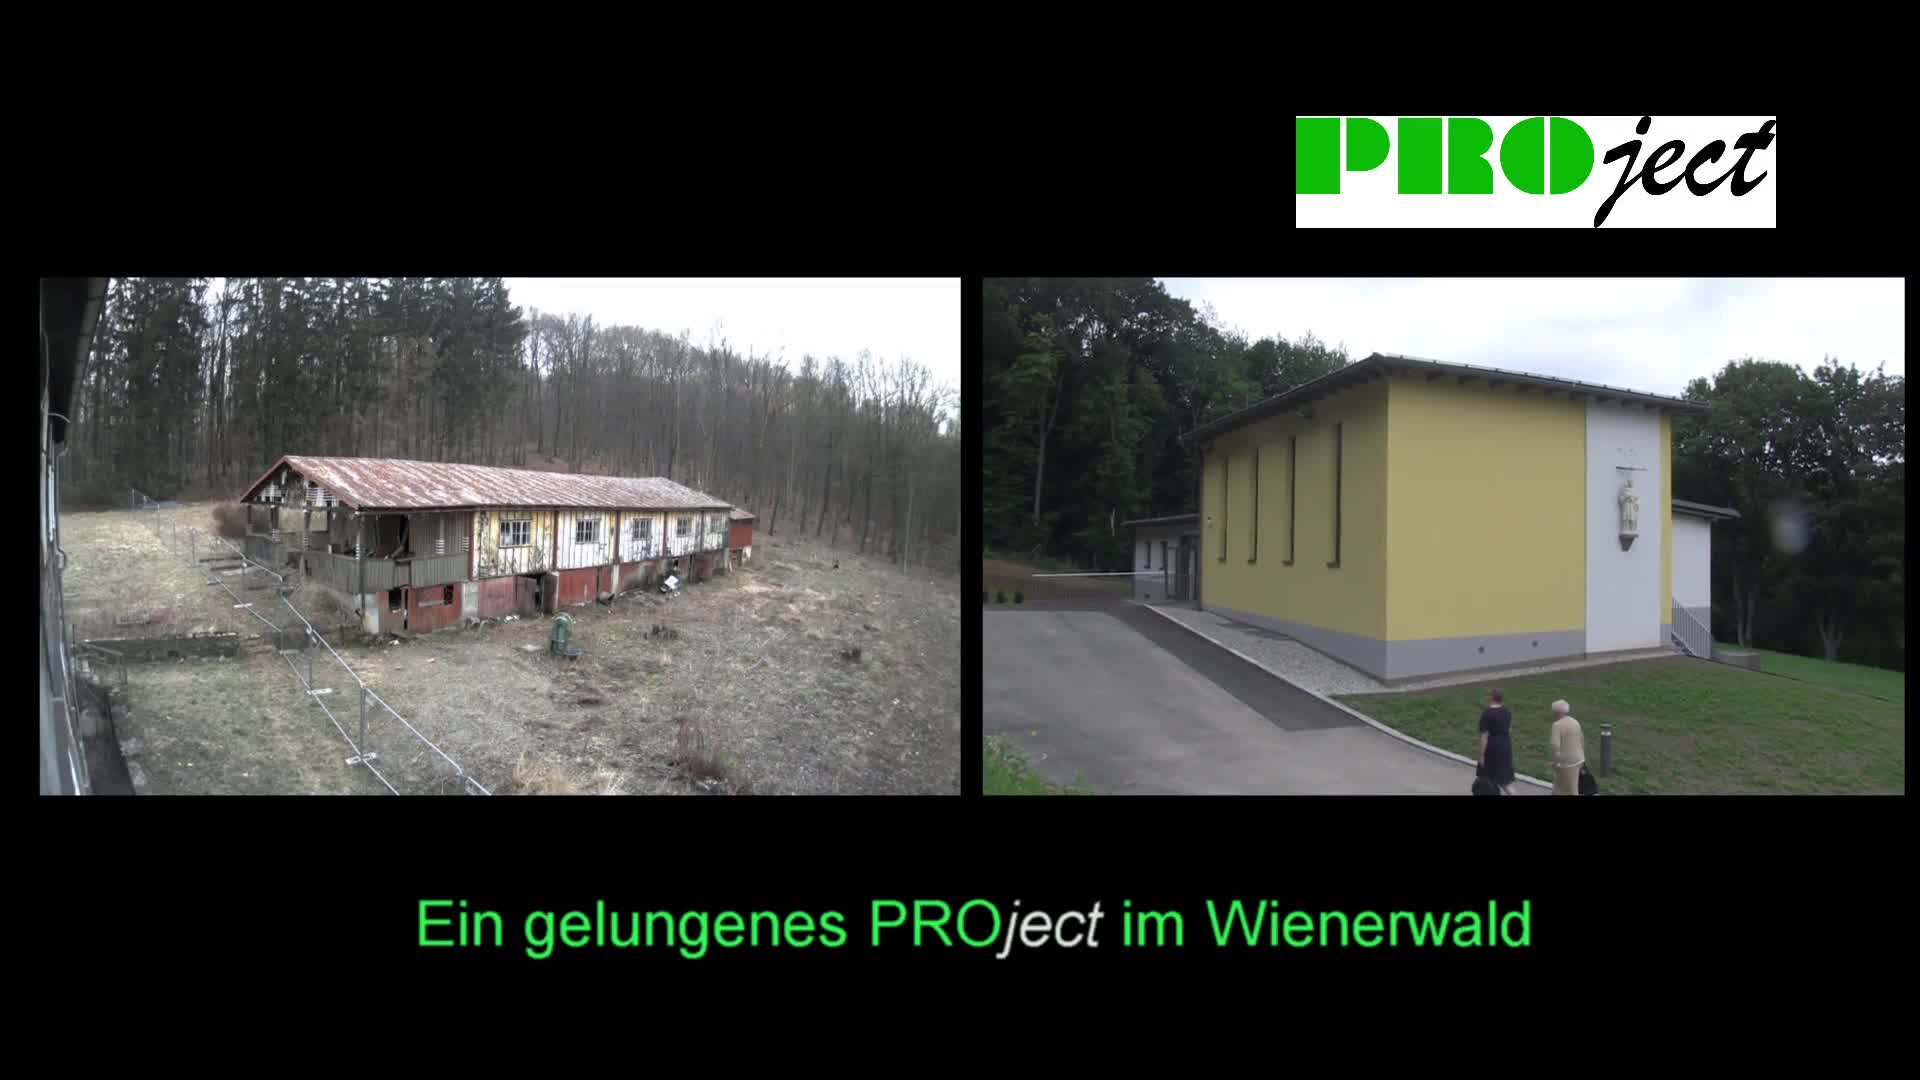 Project im Wienerwald